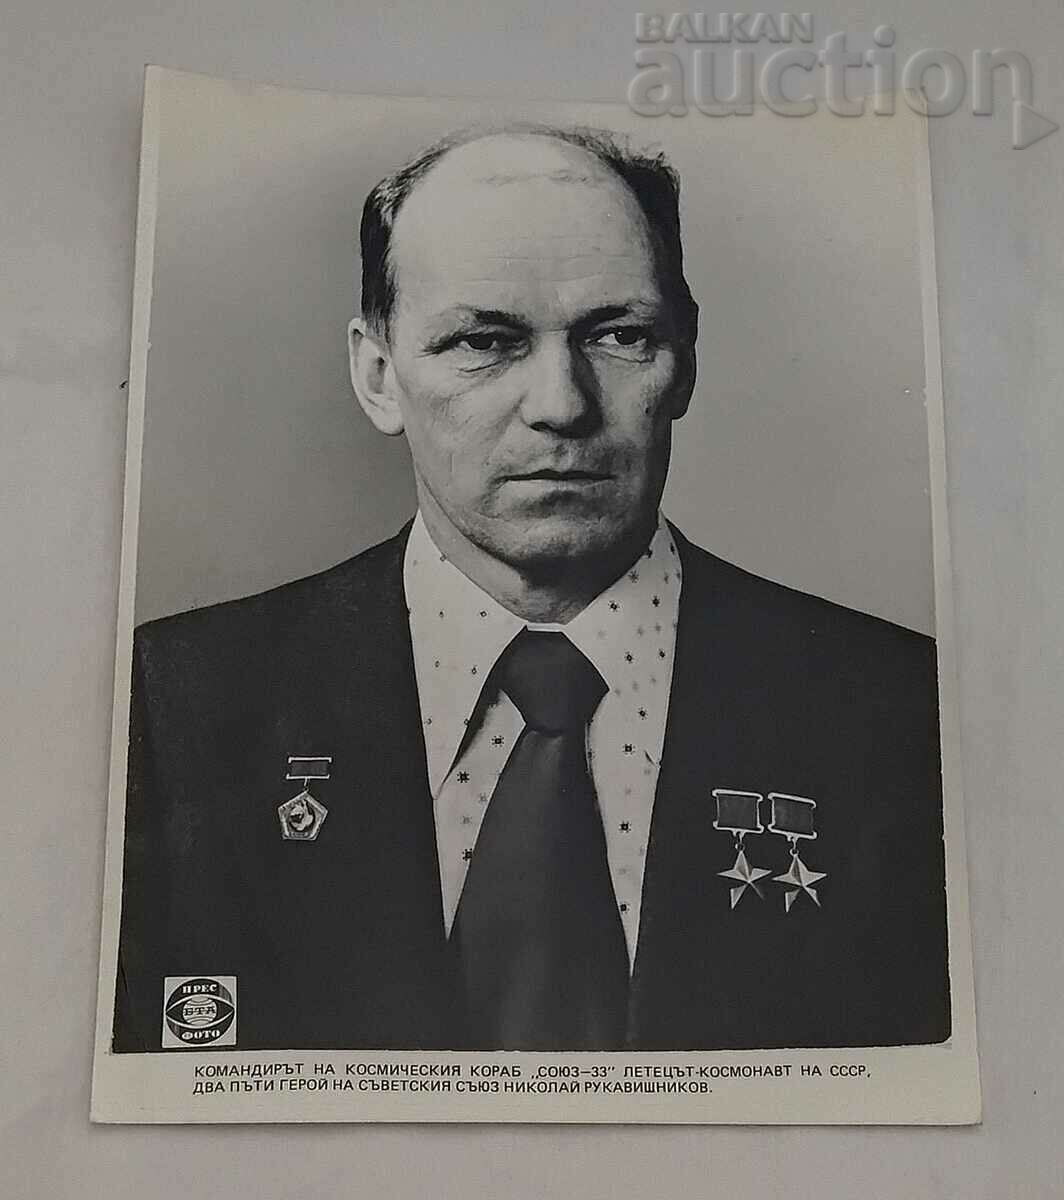 NIKOLAI RUKAVISHNIKOV "SOYUZ-33" USSR PRESS PHOTO 1979.